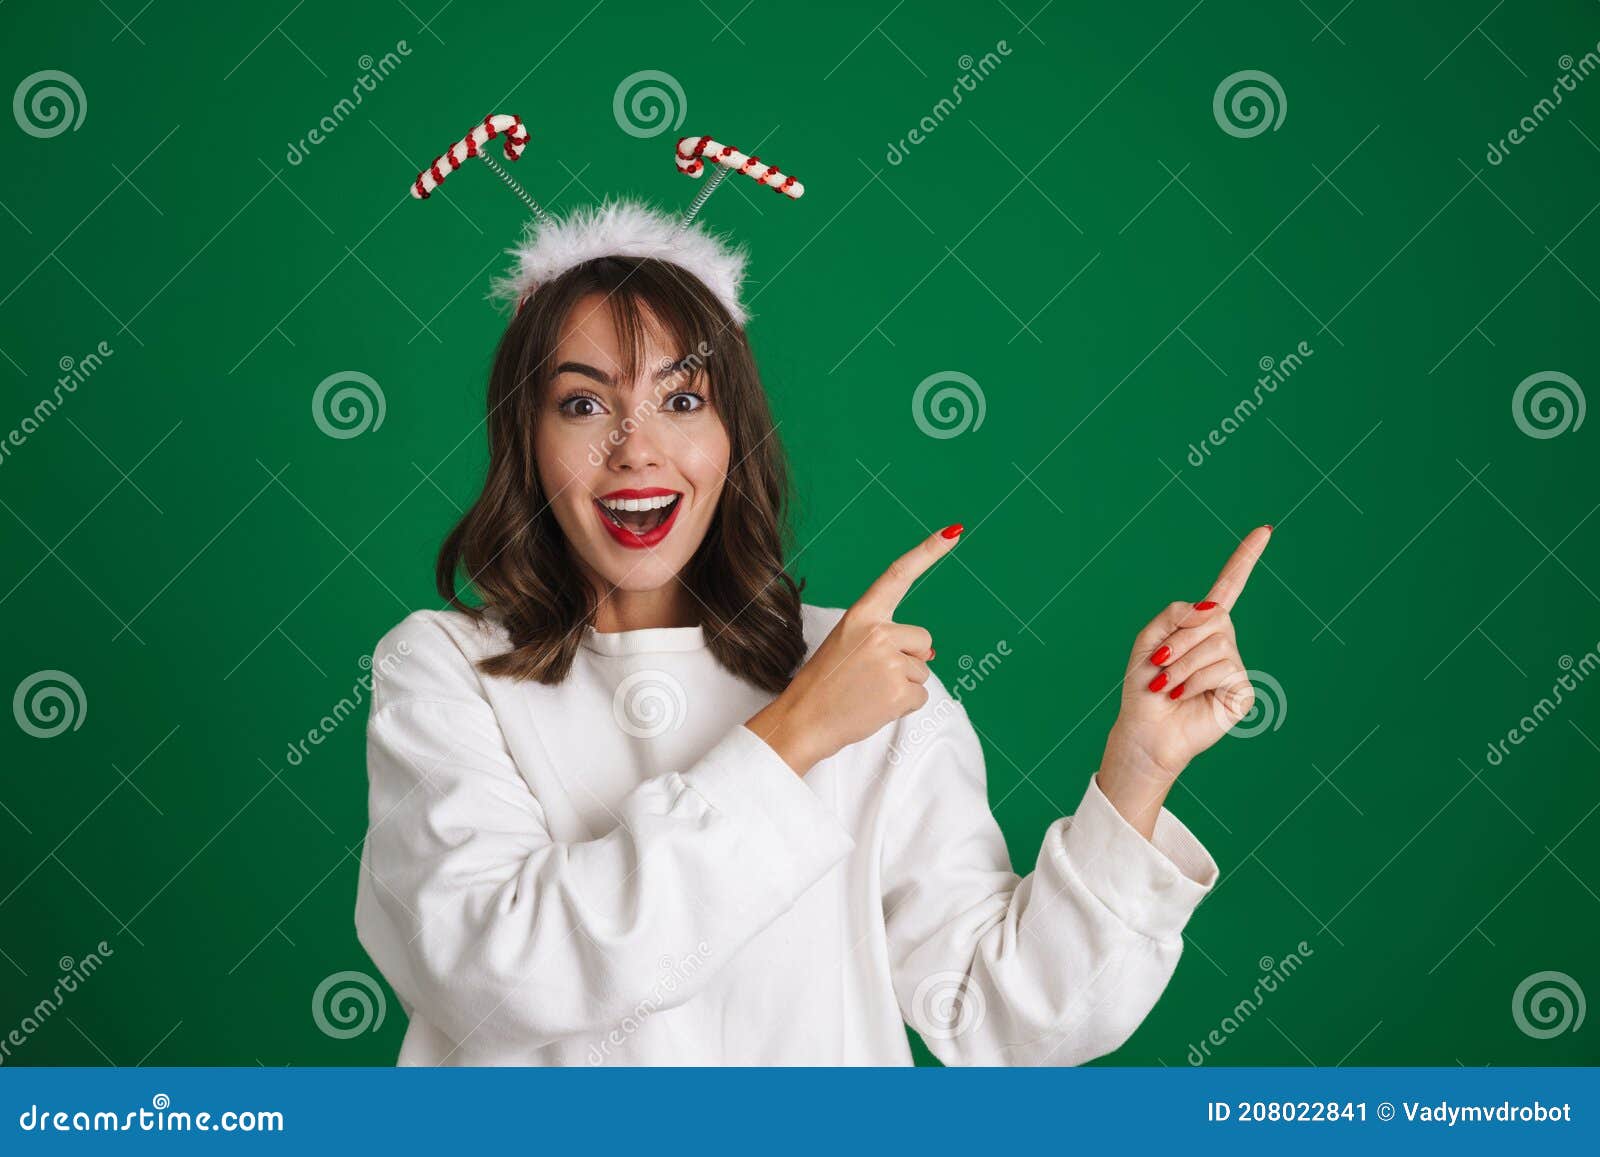 Linda garota vestindo chifres de brinquedo sorrindo e apontando dedos à parte. Linda garota excitada usando chifres de brinquedo sorrindo e apontando dedos à parte isolada sobre fundo verde